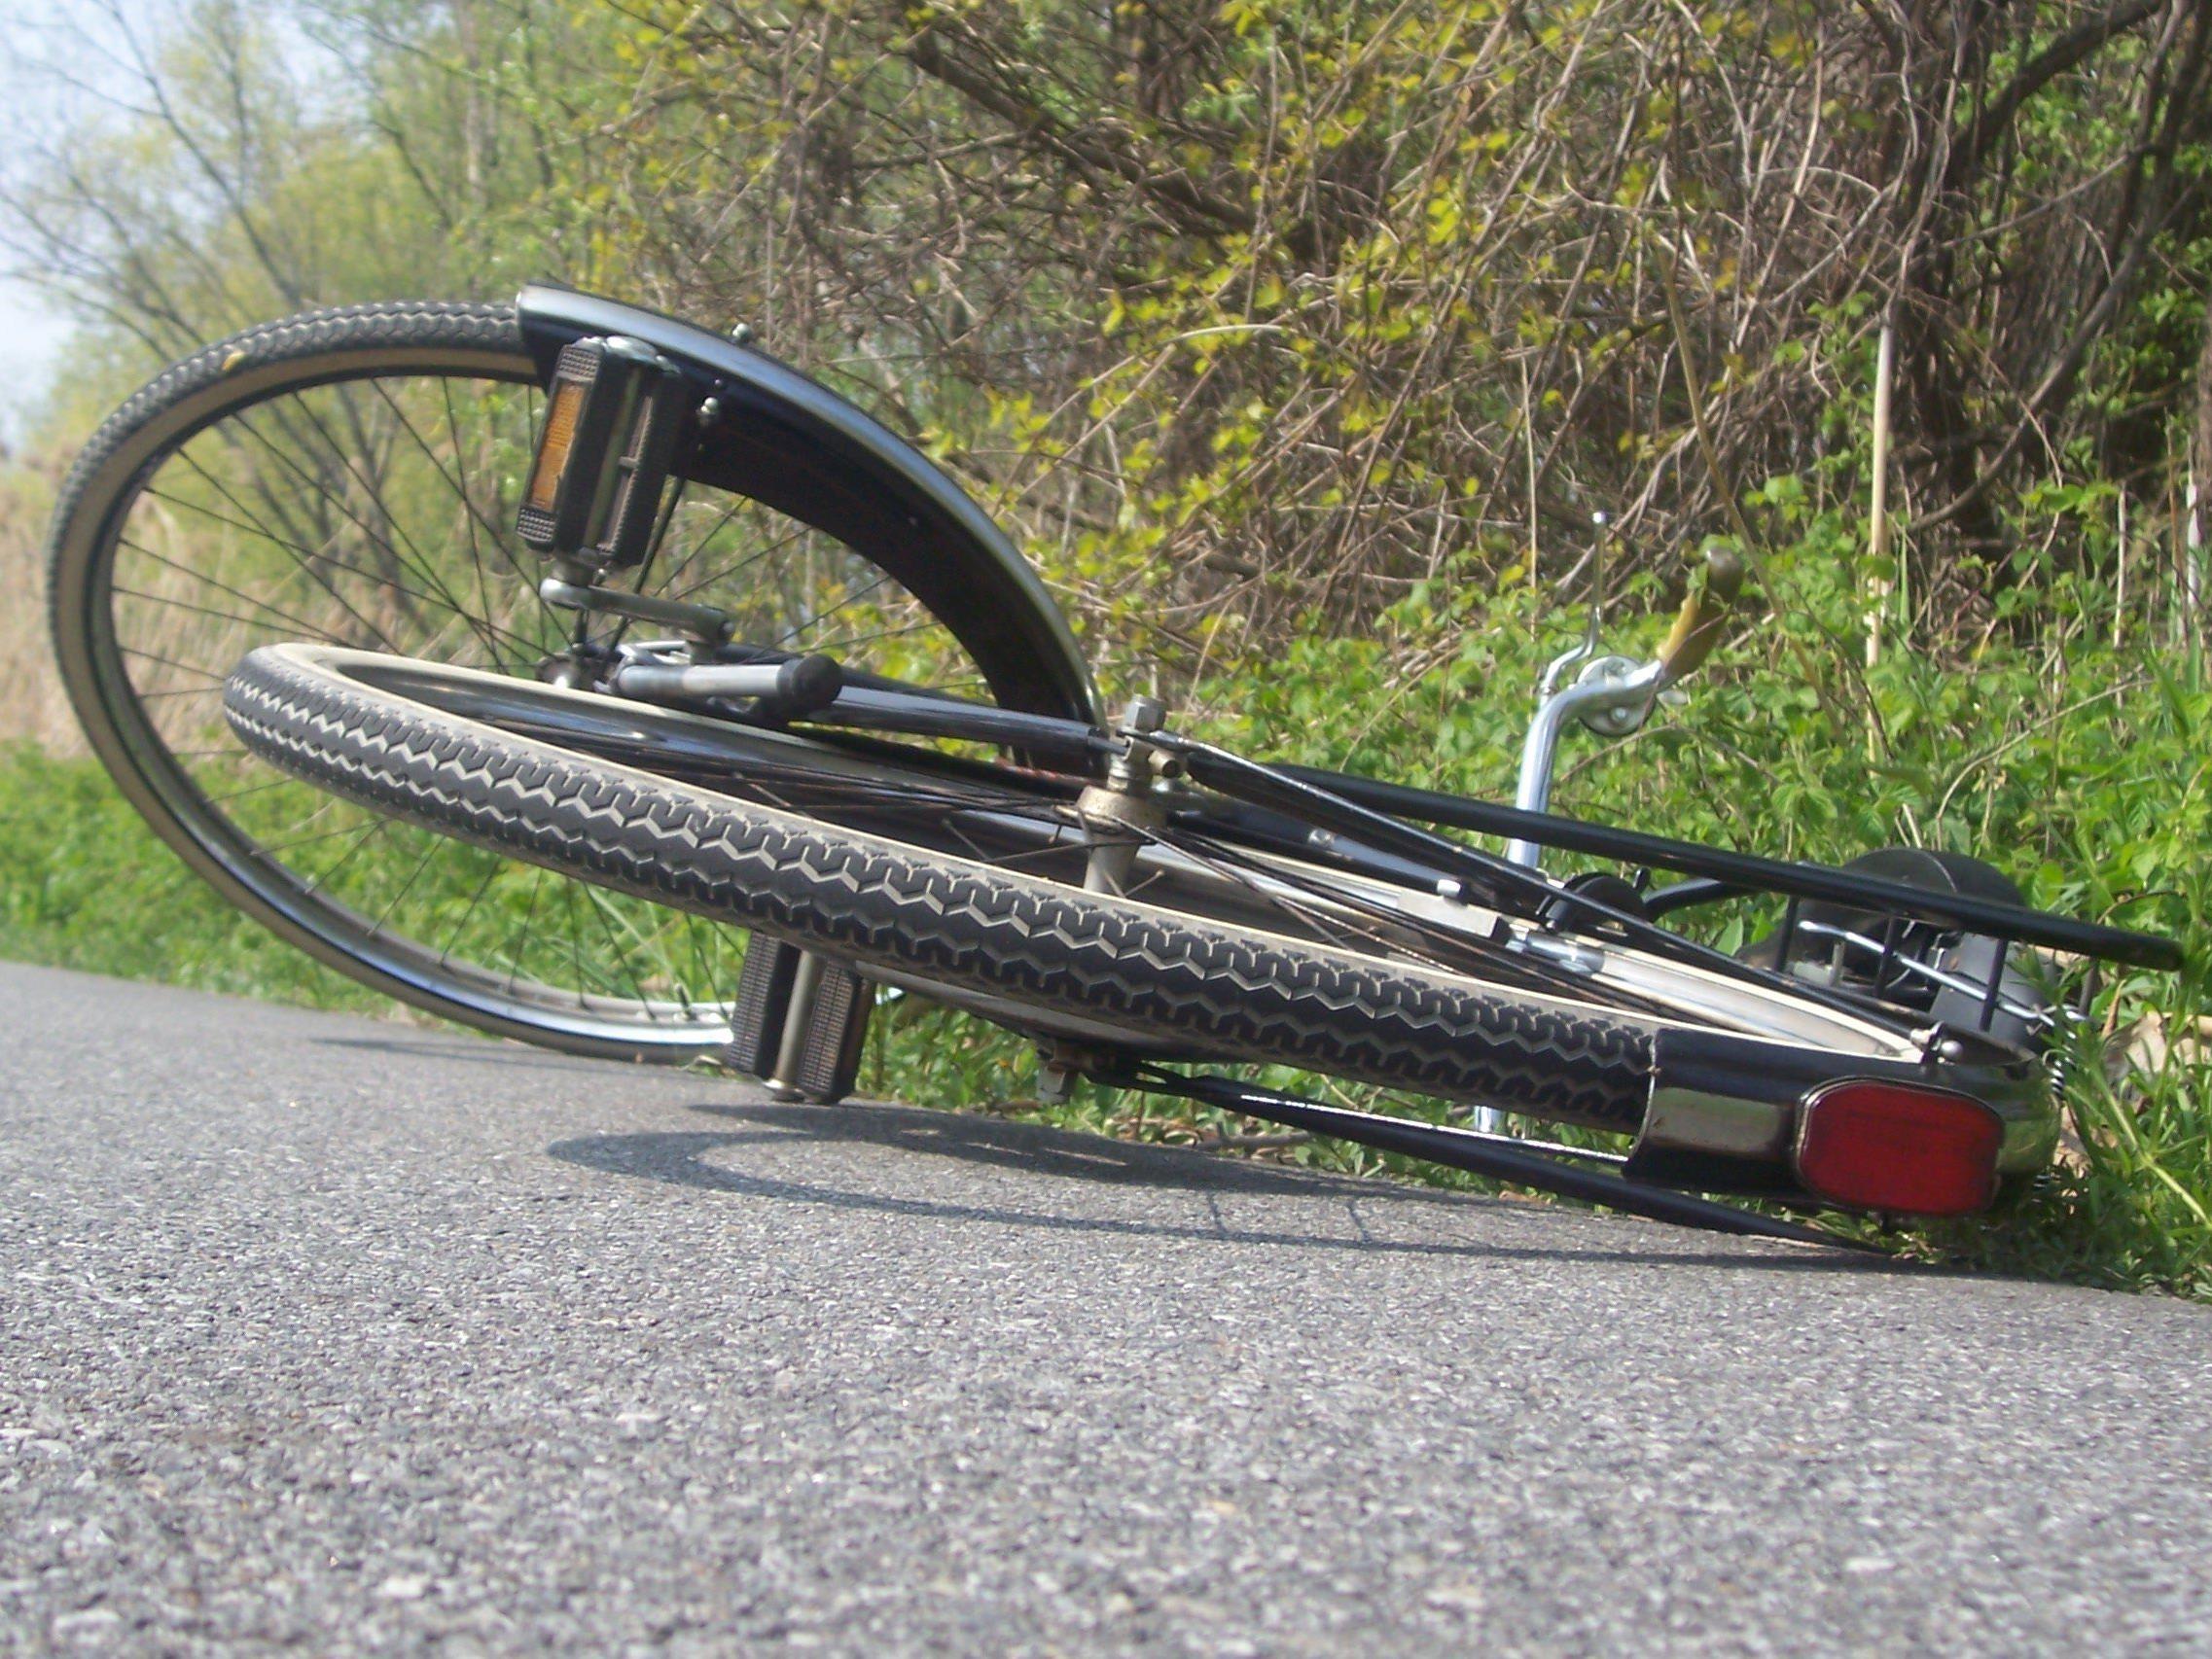 Fahrradfahrerin von Pkw gestreift und gestürzt - Zeugen gesucht.